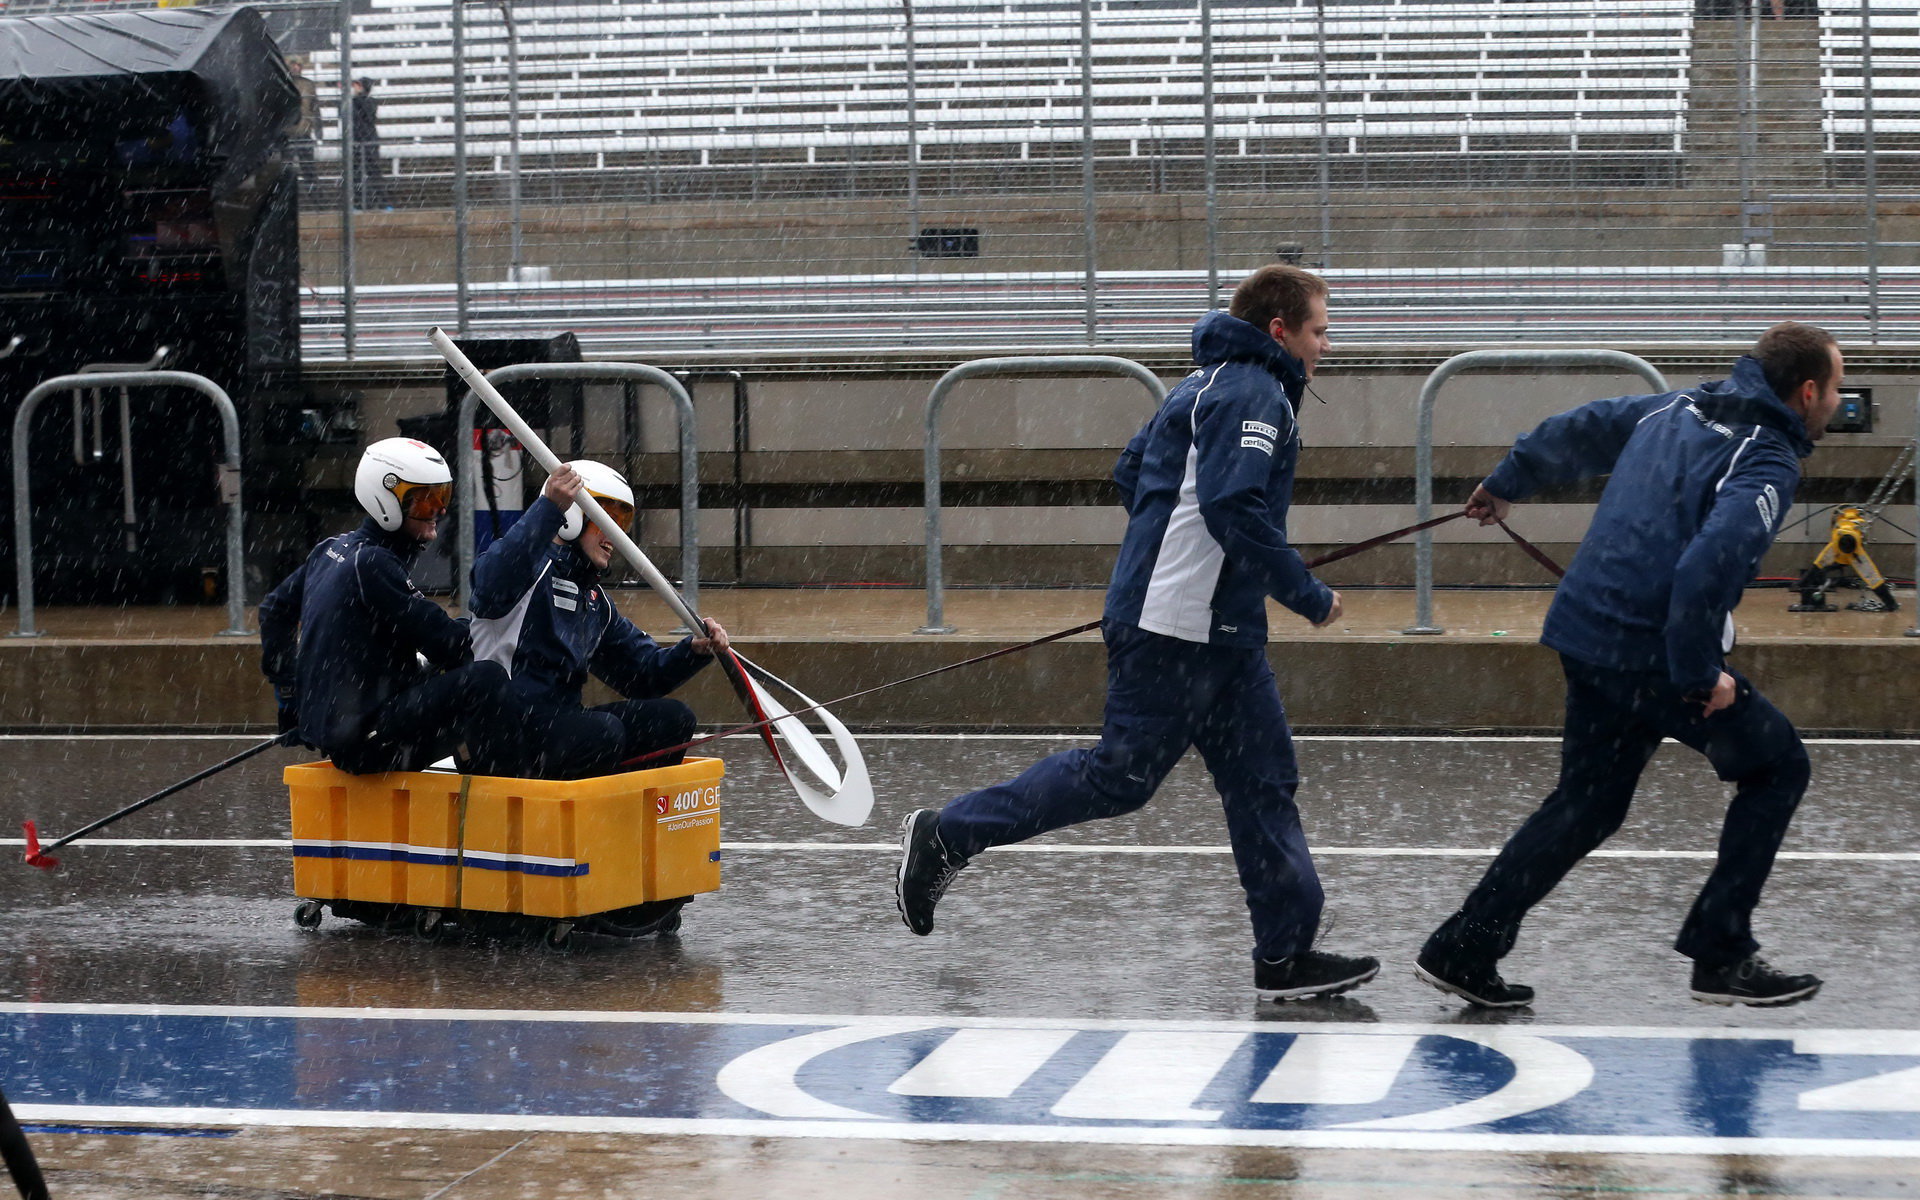 Mechanici týmu Sauber az deště v Austinu